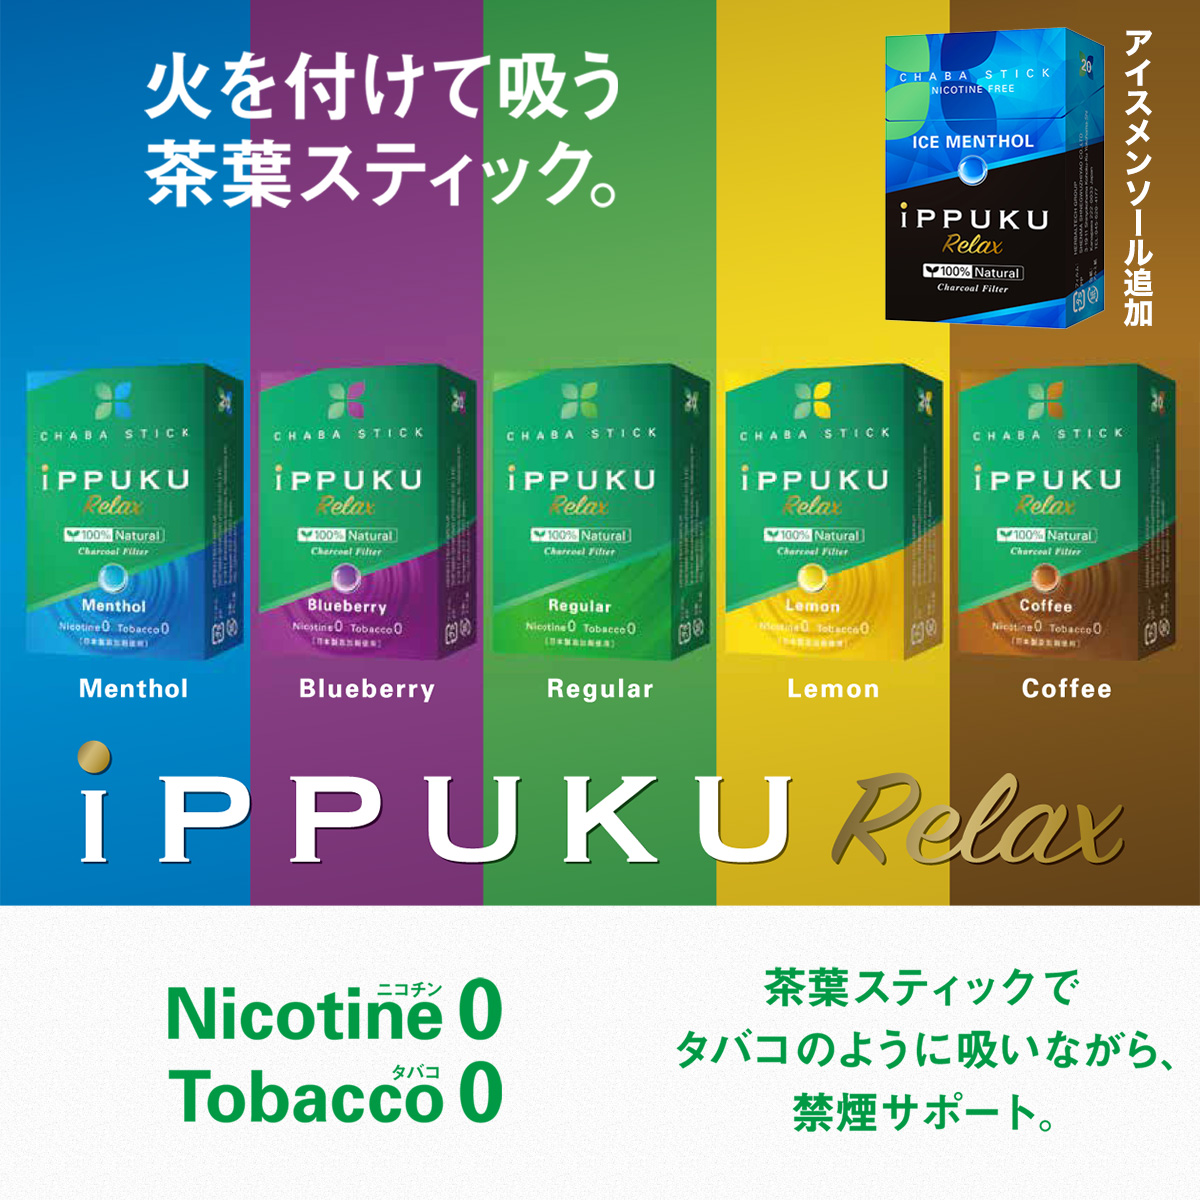 イップク・リラックス iPPUKU RELAX ‐ いっぷく 禁煙 タバコ ノーニコチン 茶葉スティック  ニコチンゼロ 禁煙用グッズ ナチュラル プーア−ル茶 タバコ代用品